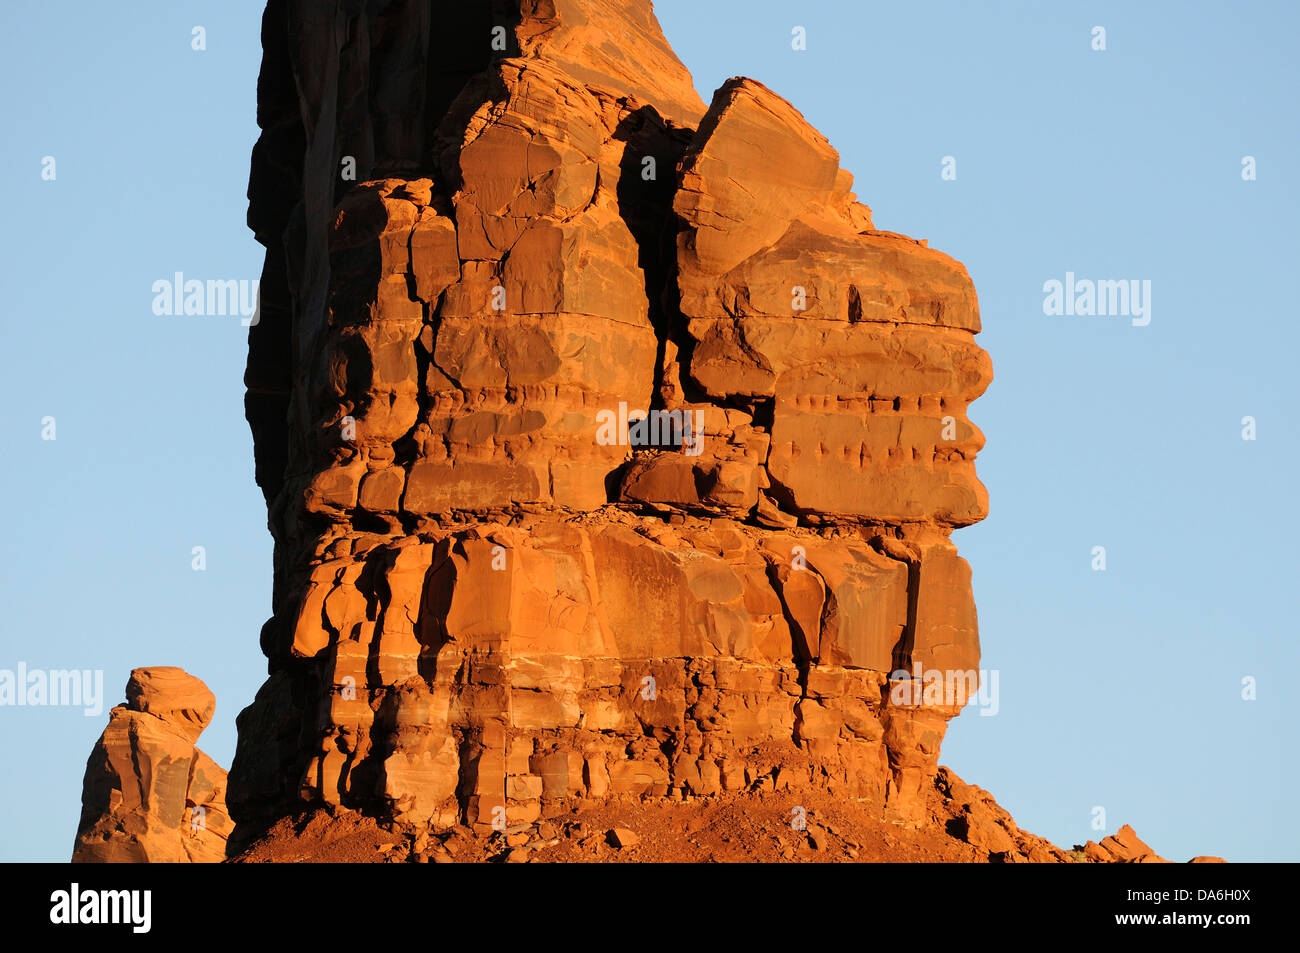 Stati Uniti d'America, Stati Uniti, America, Arizona, Kayenta, Nord America, Sud-ovest, Arizona Monument Valley, rocce, erosione, natura, rock Foto Stock